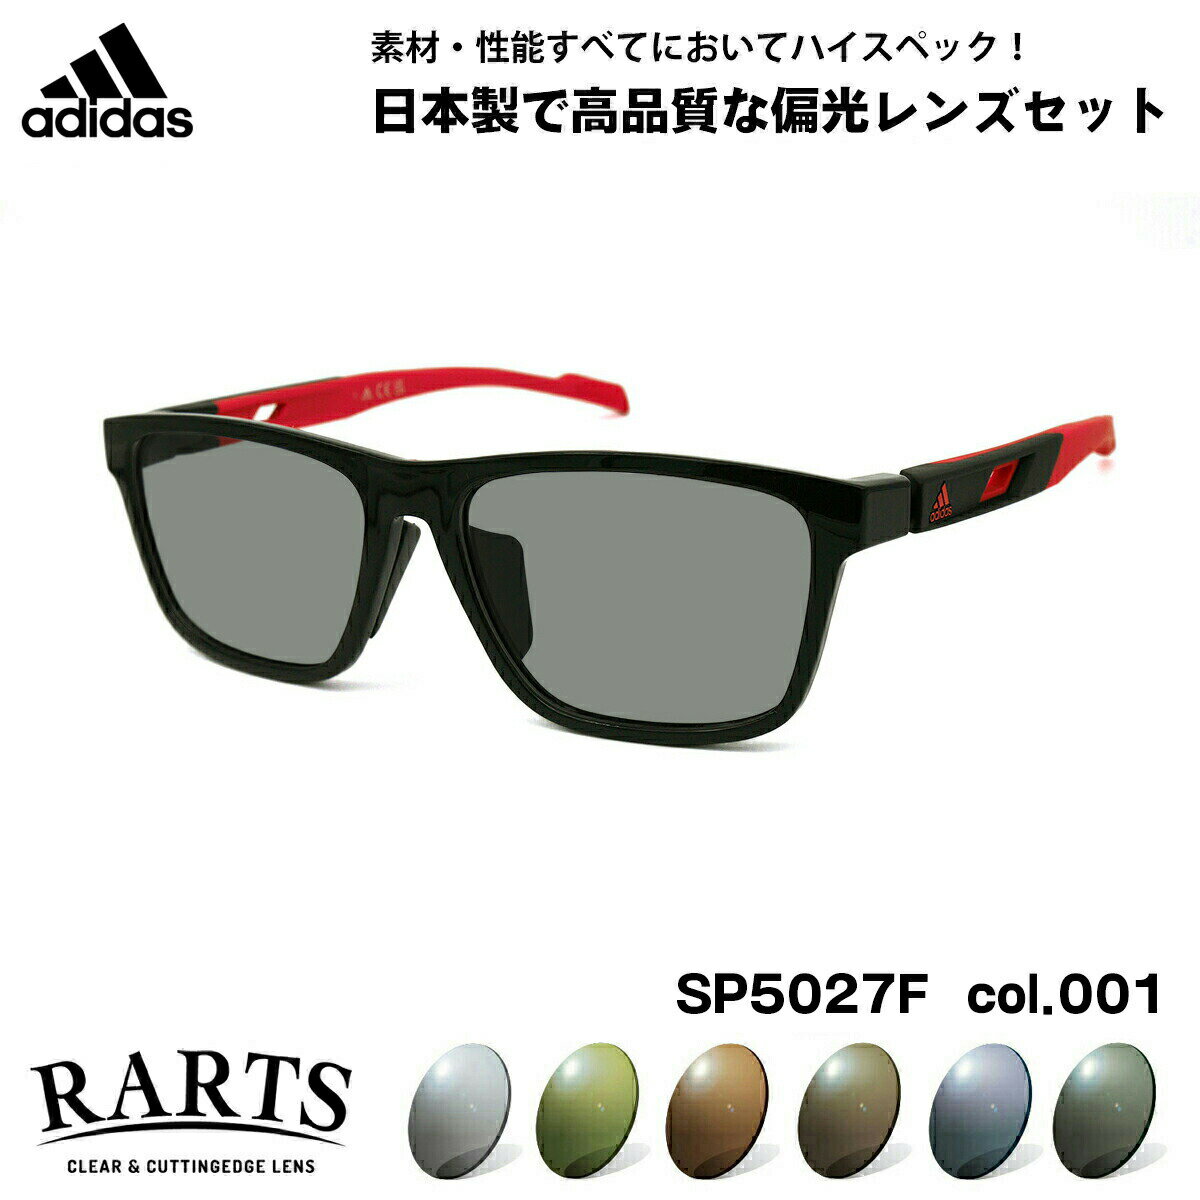 アディダス アディダス 偏光 サングラス RARTS SP5027F (SP5027F/V) col.001 56mm adidas アジアンフィット アーツ UVカット